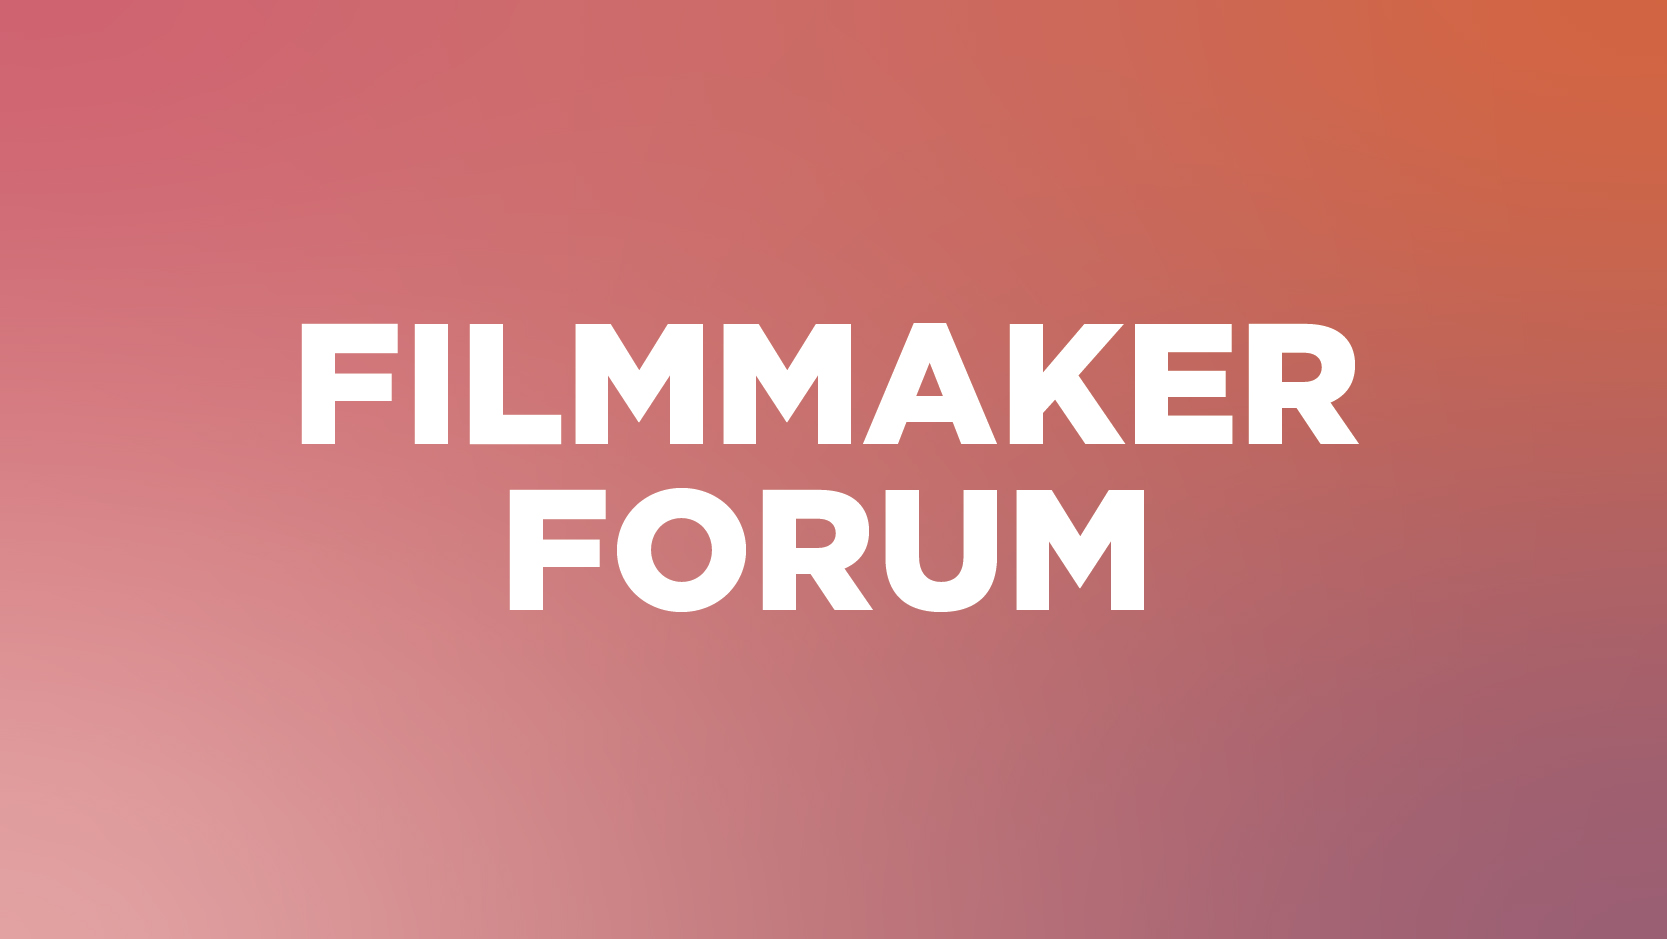 Filmmaker Forum